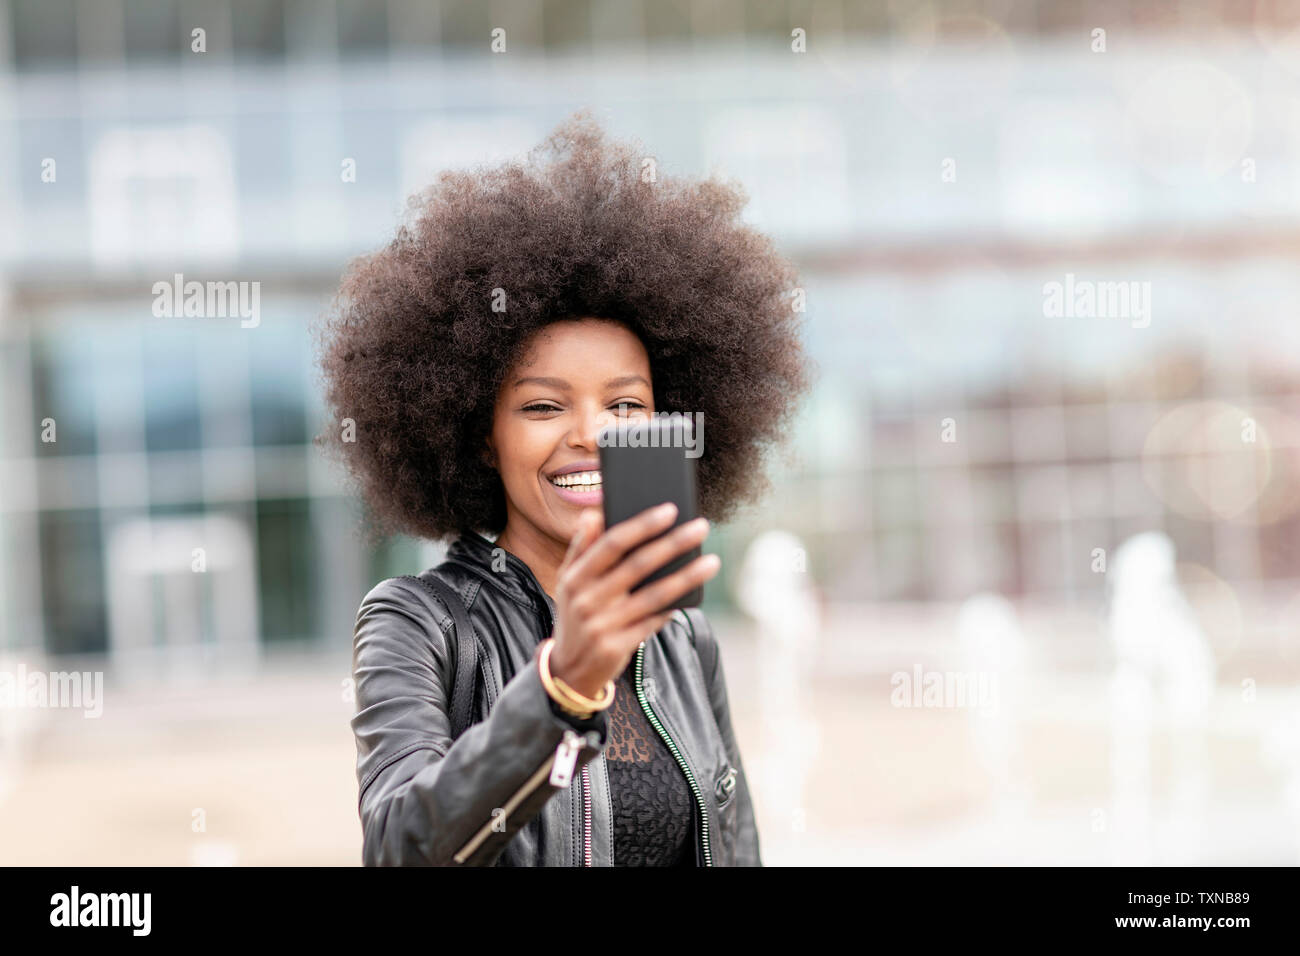 Jeune femme avec des cheveux afro selfies sur smartphone en ville concourse Banque D'Images